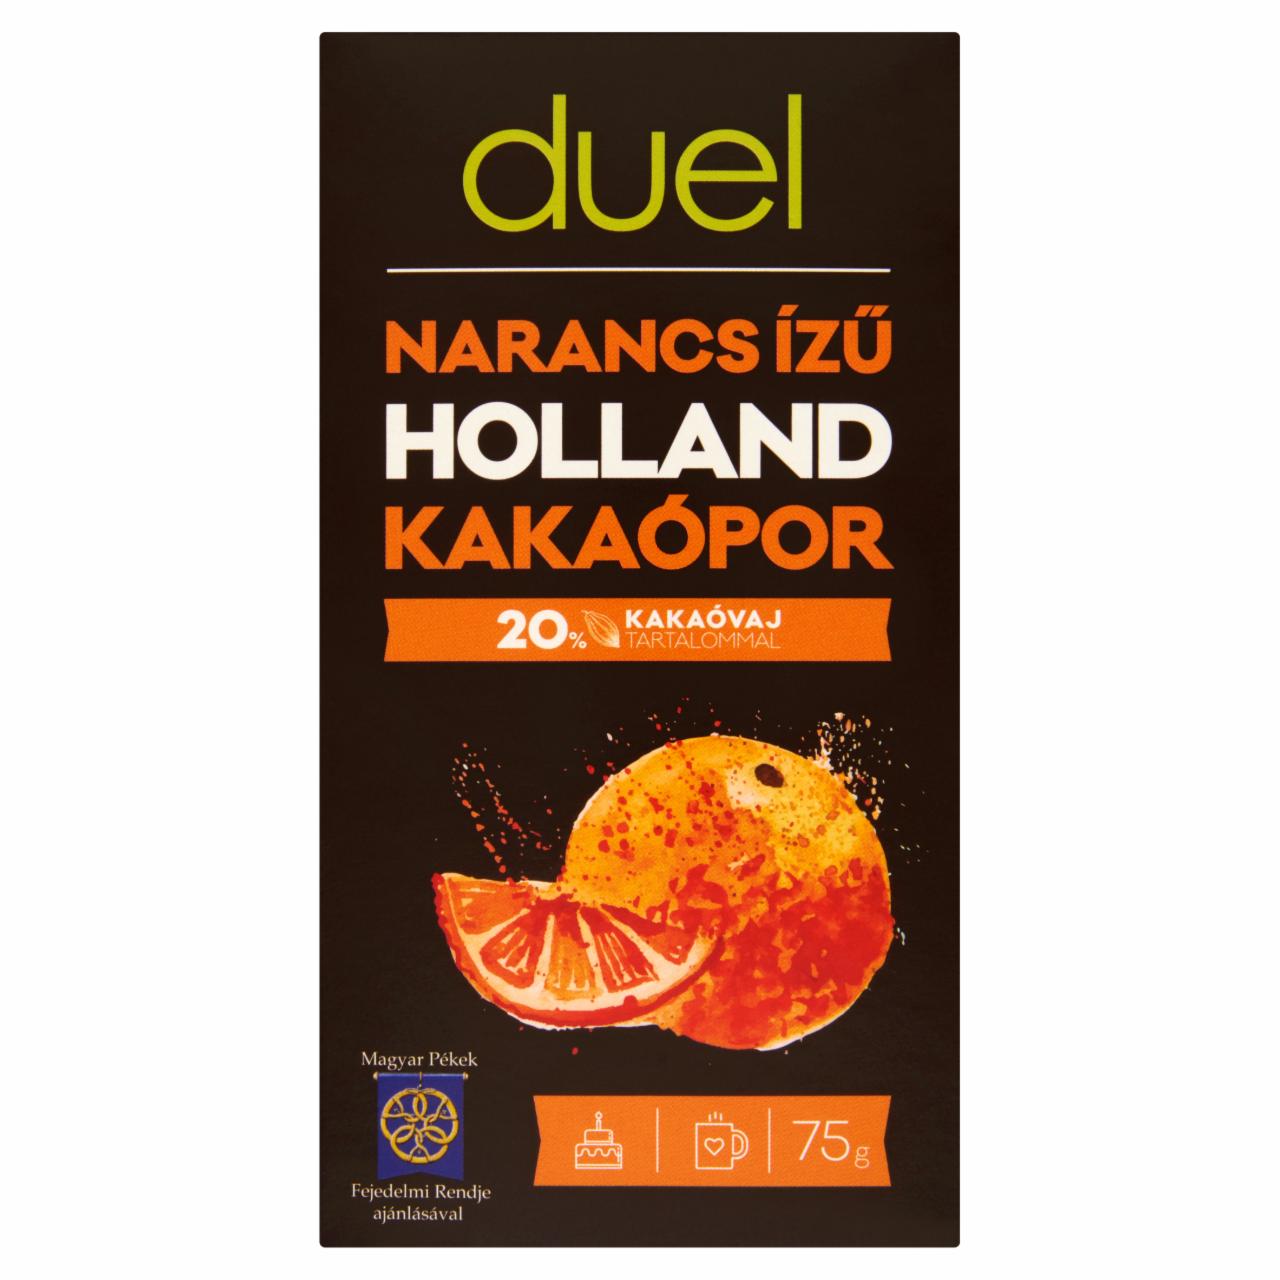 Képek - Duel narancs ízű holland kakaópor 75 g